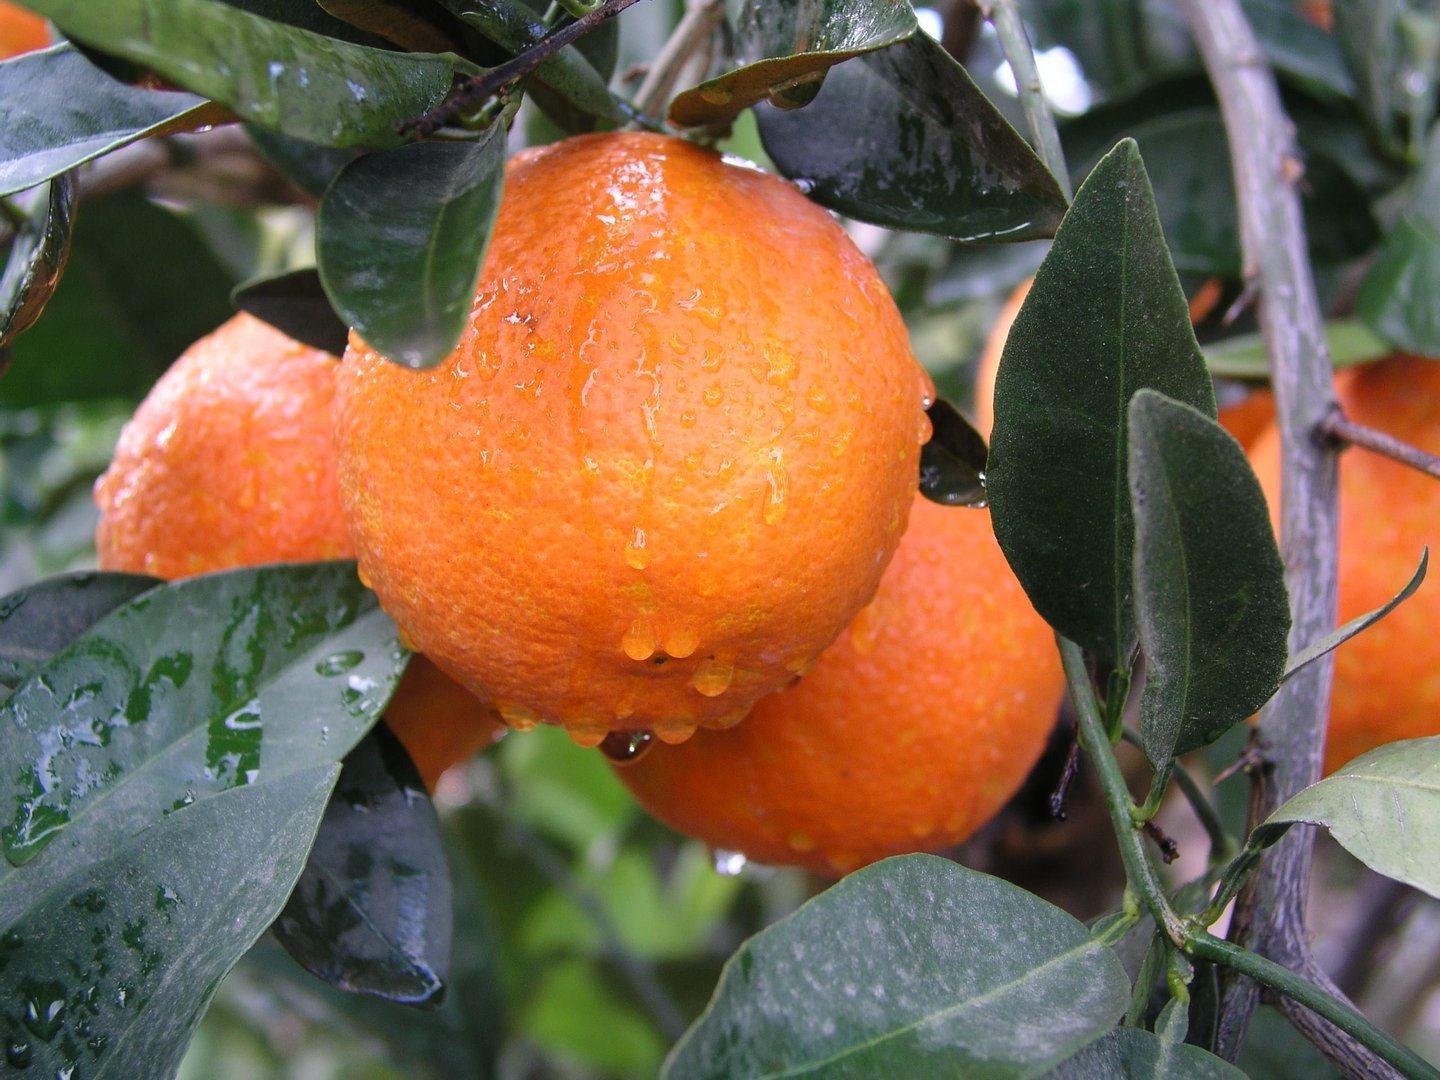 image North ‘minister’ says Republic must tighten citrus quarantine